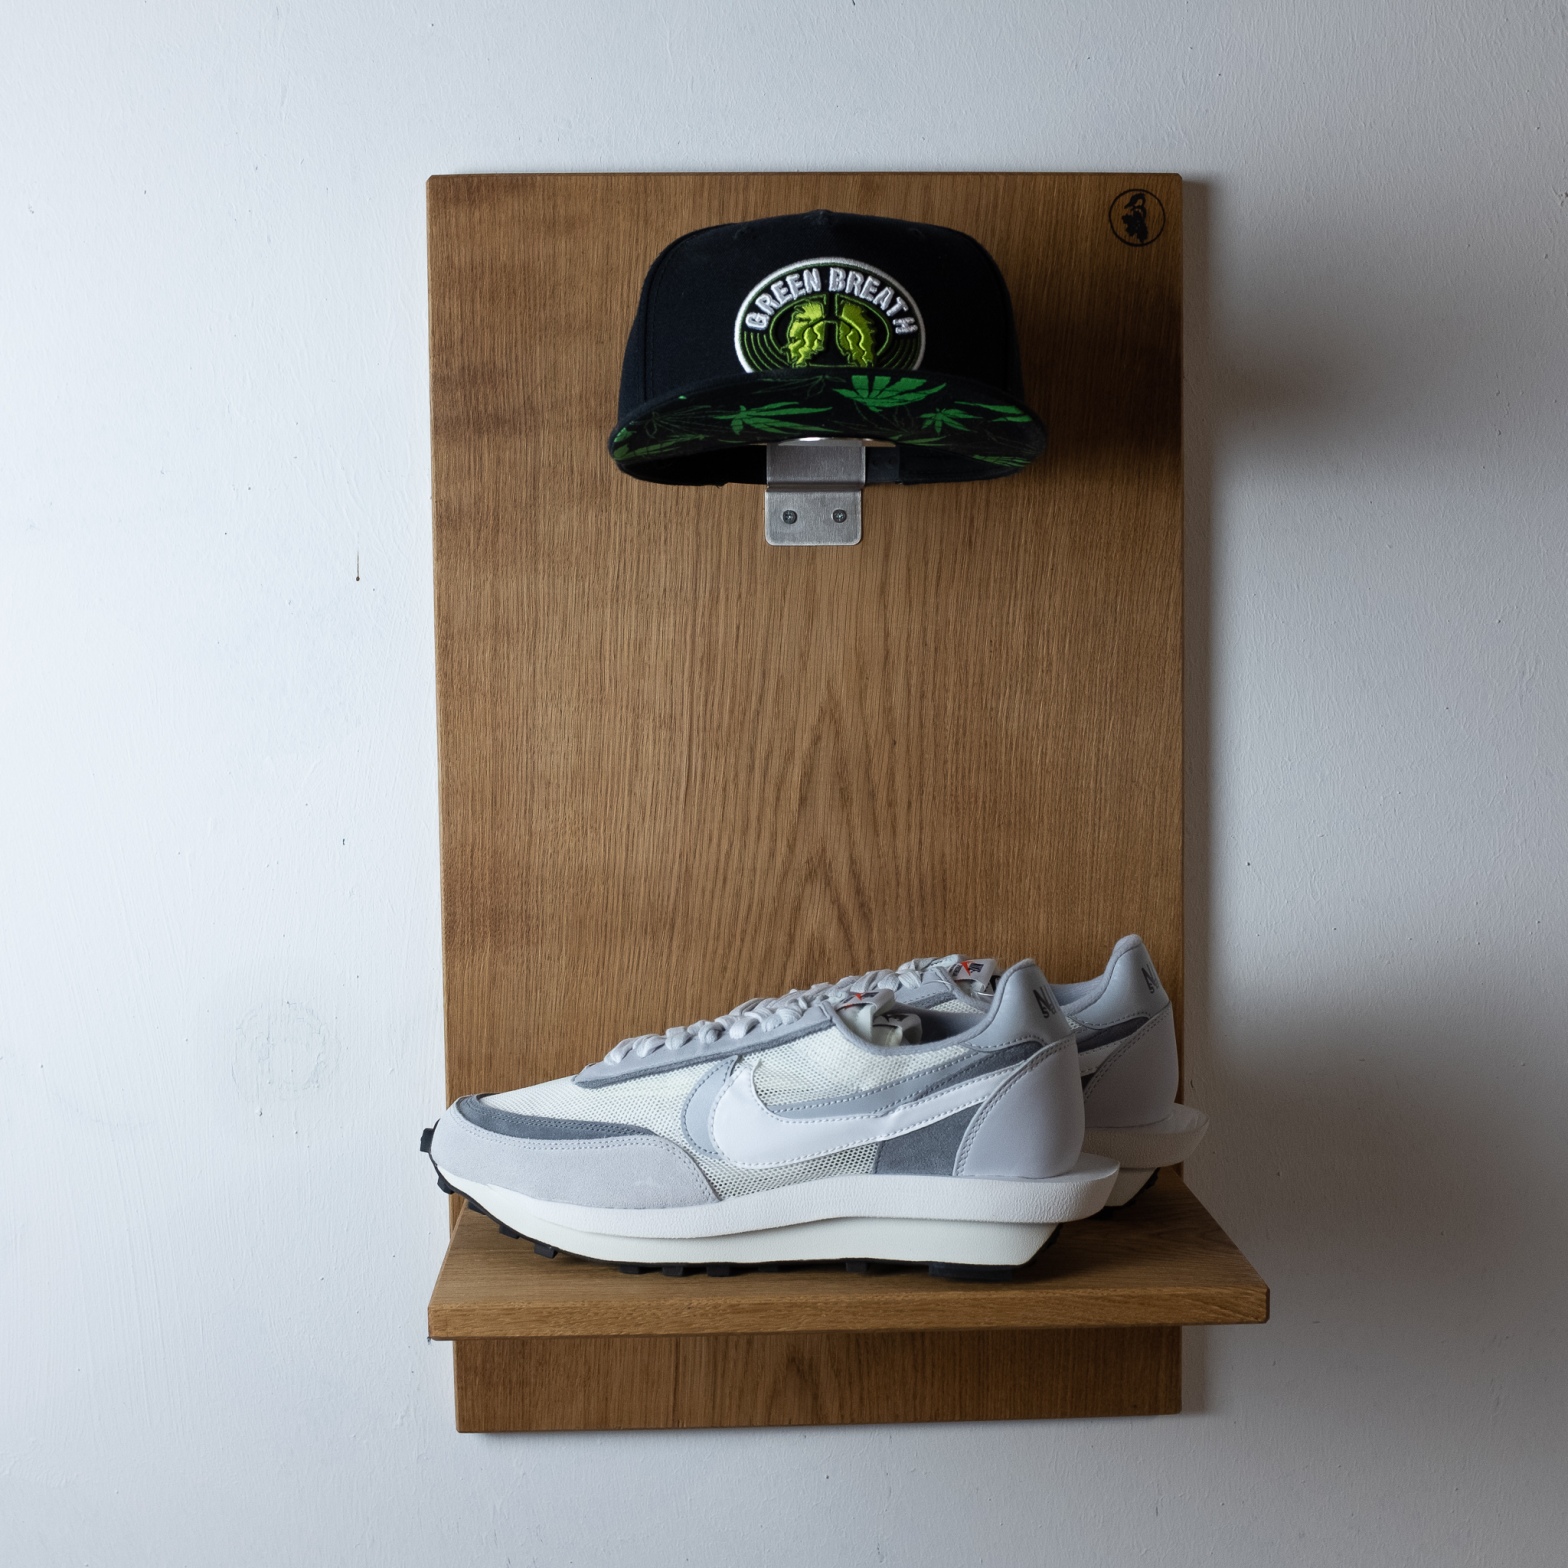 Caphalter, Sneakers Display